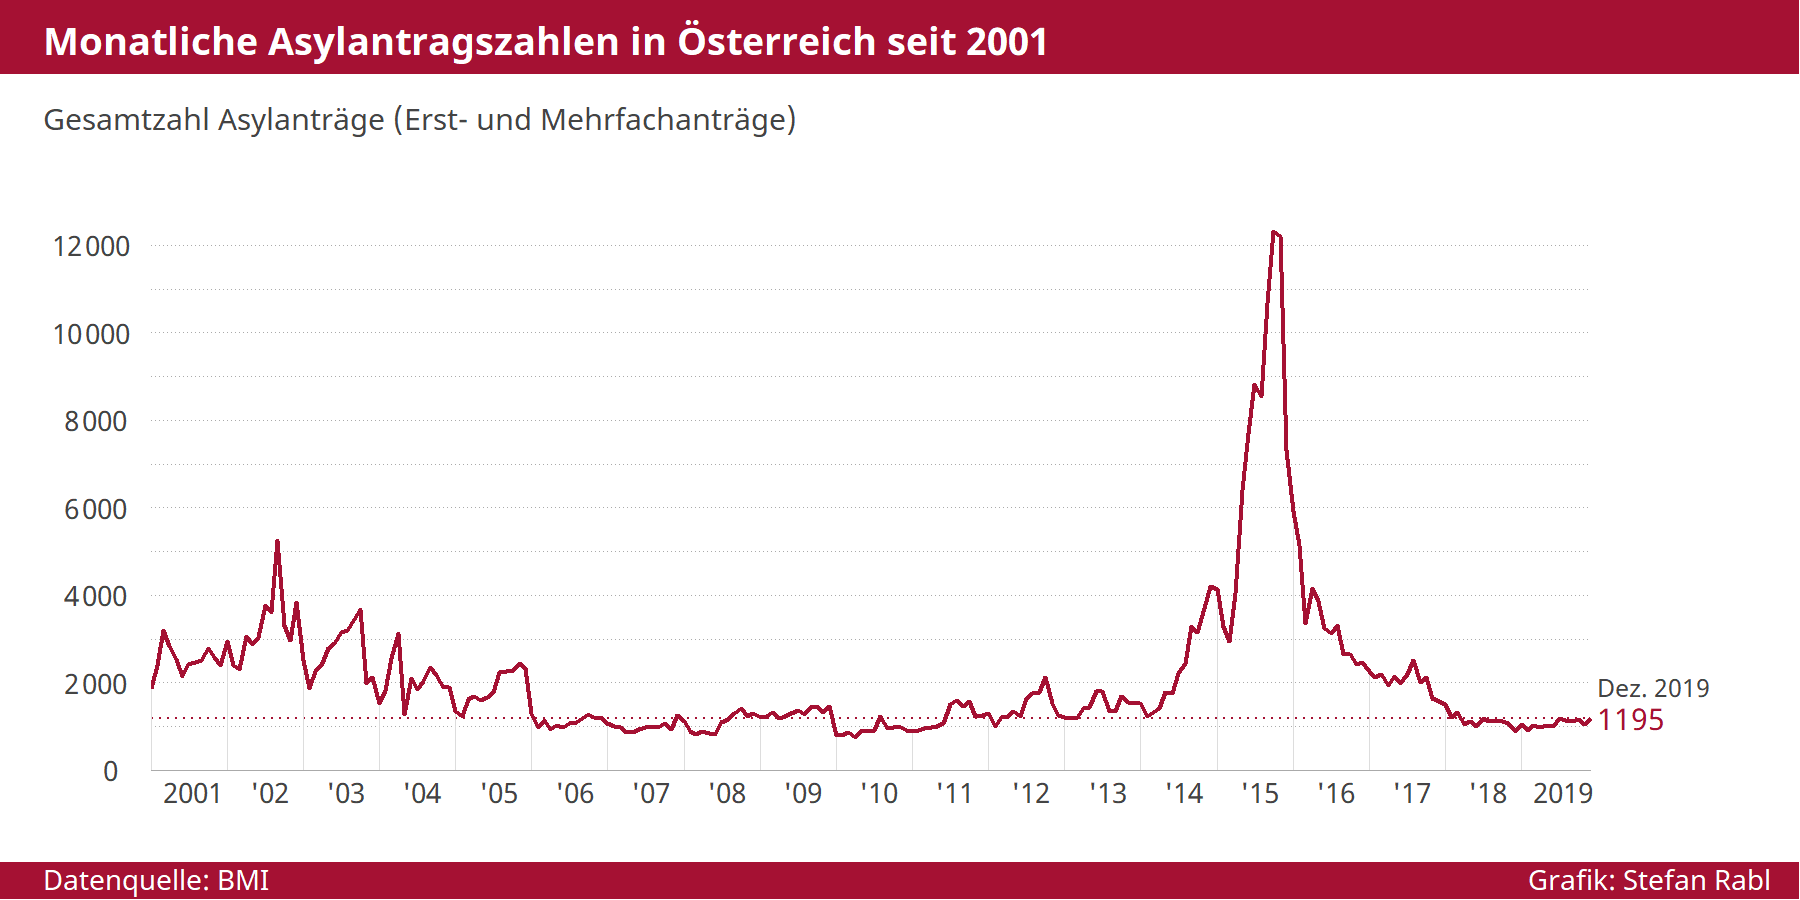 Grafik: Monatliche Asylanträge in Österreich seit 2001